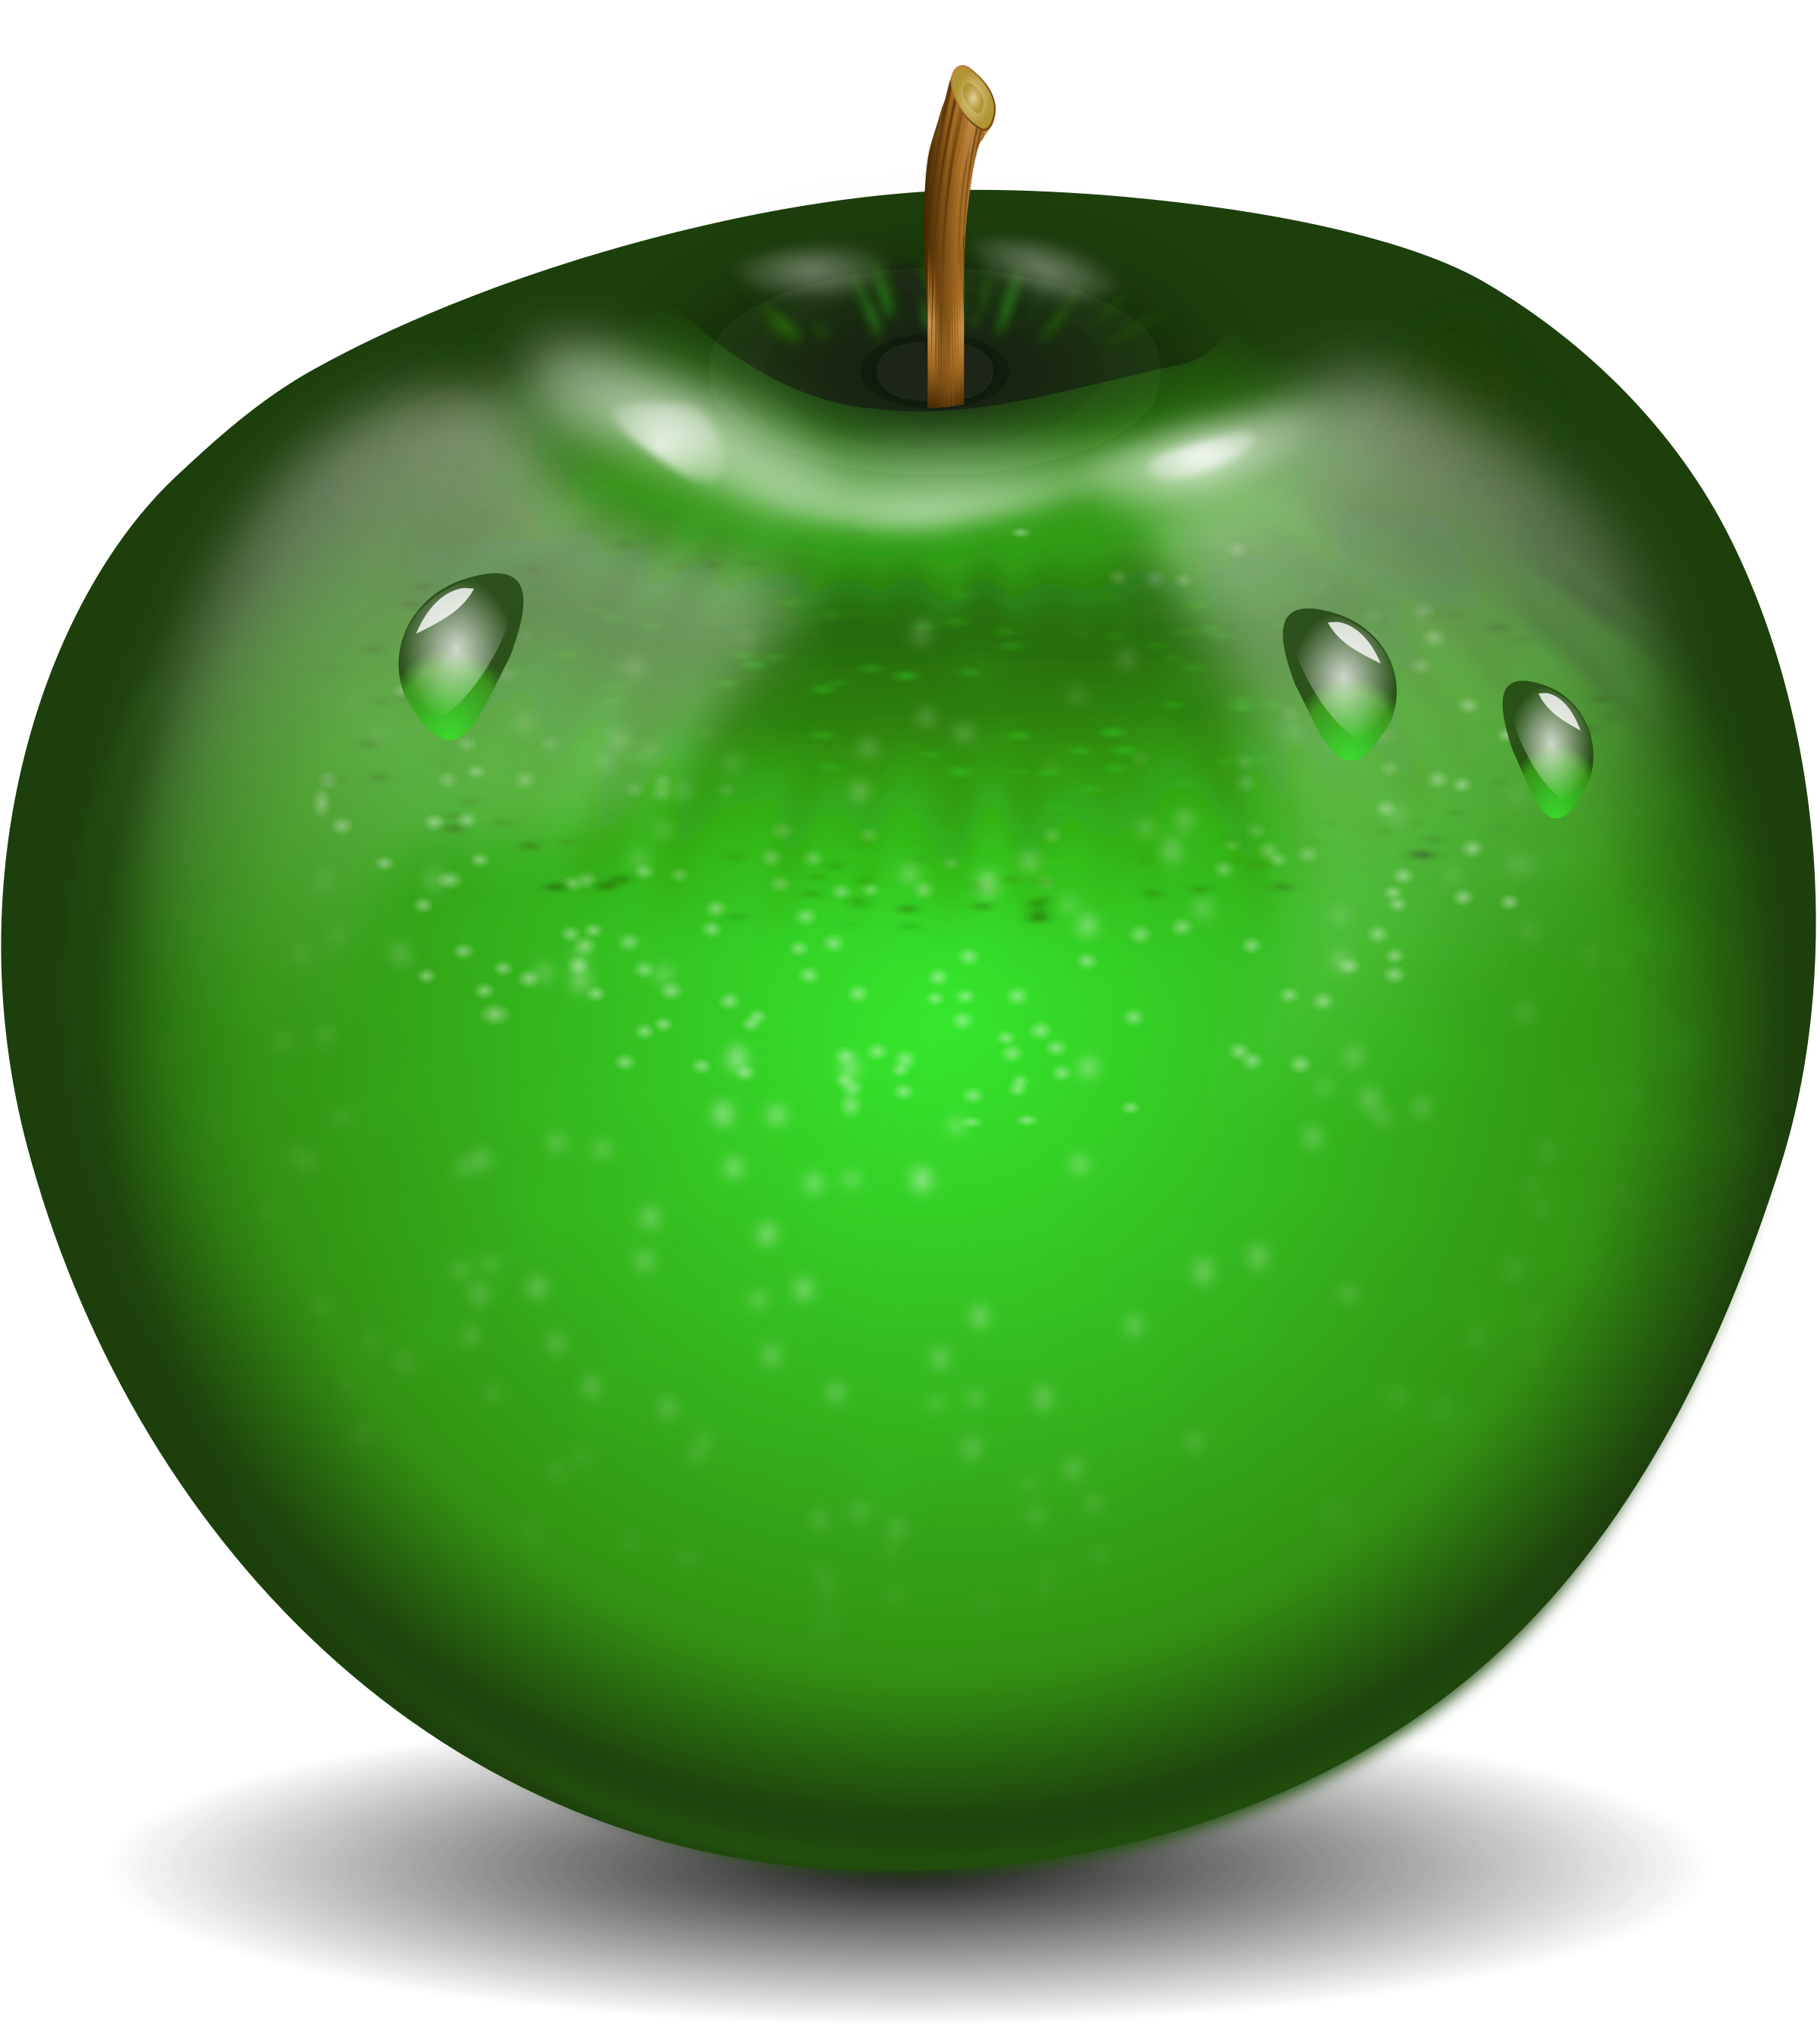 물 방울과 녹색 사과